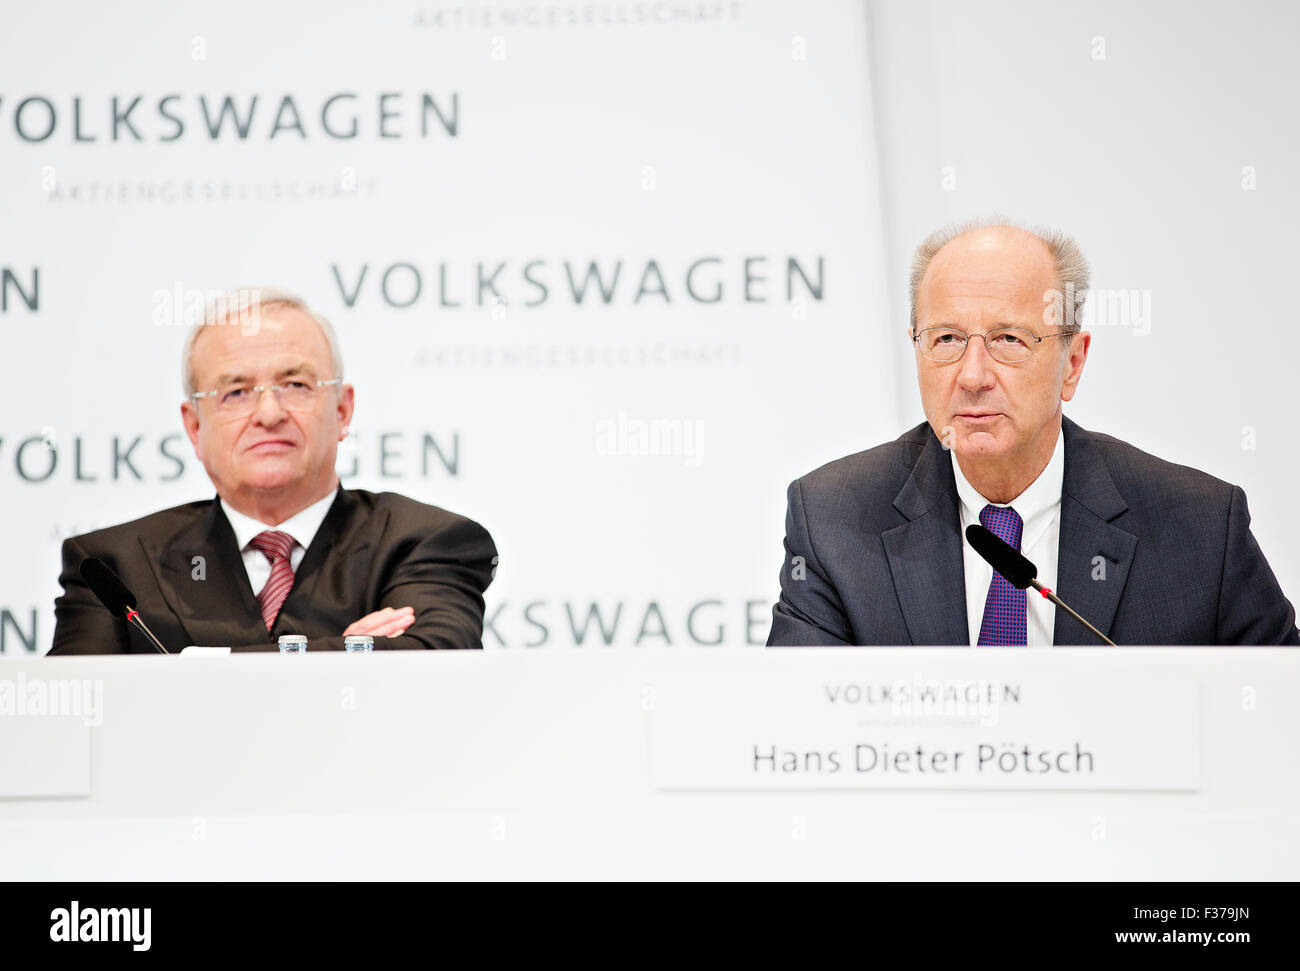 Hans Dieter Poetsch, Martin Winterkorn, VW, Volkswagen Stock Photo